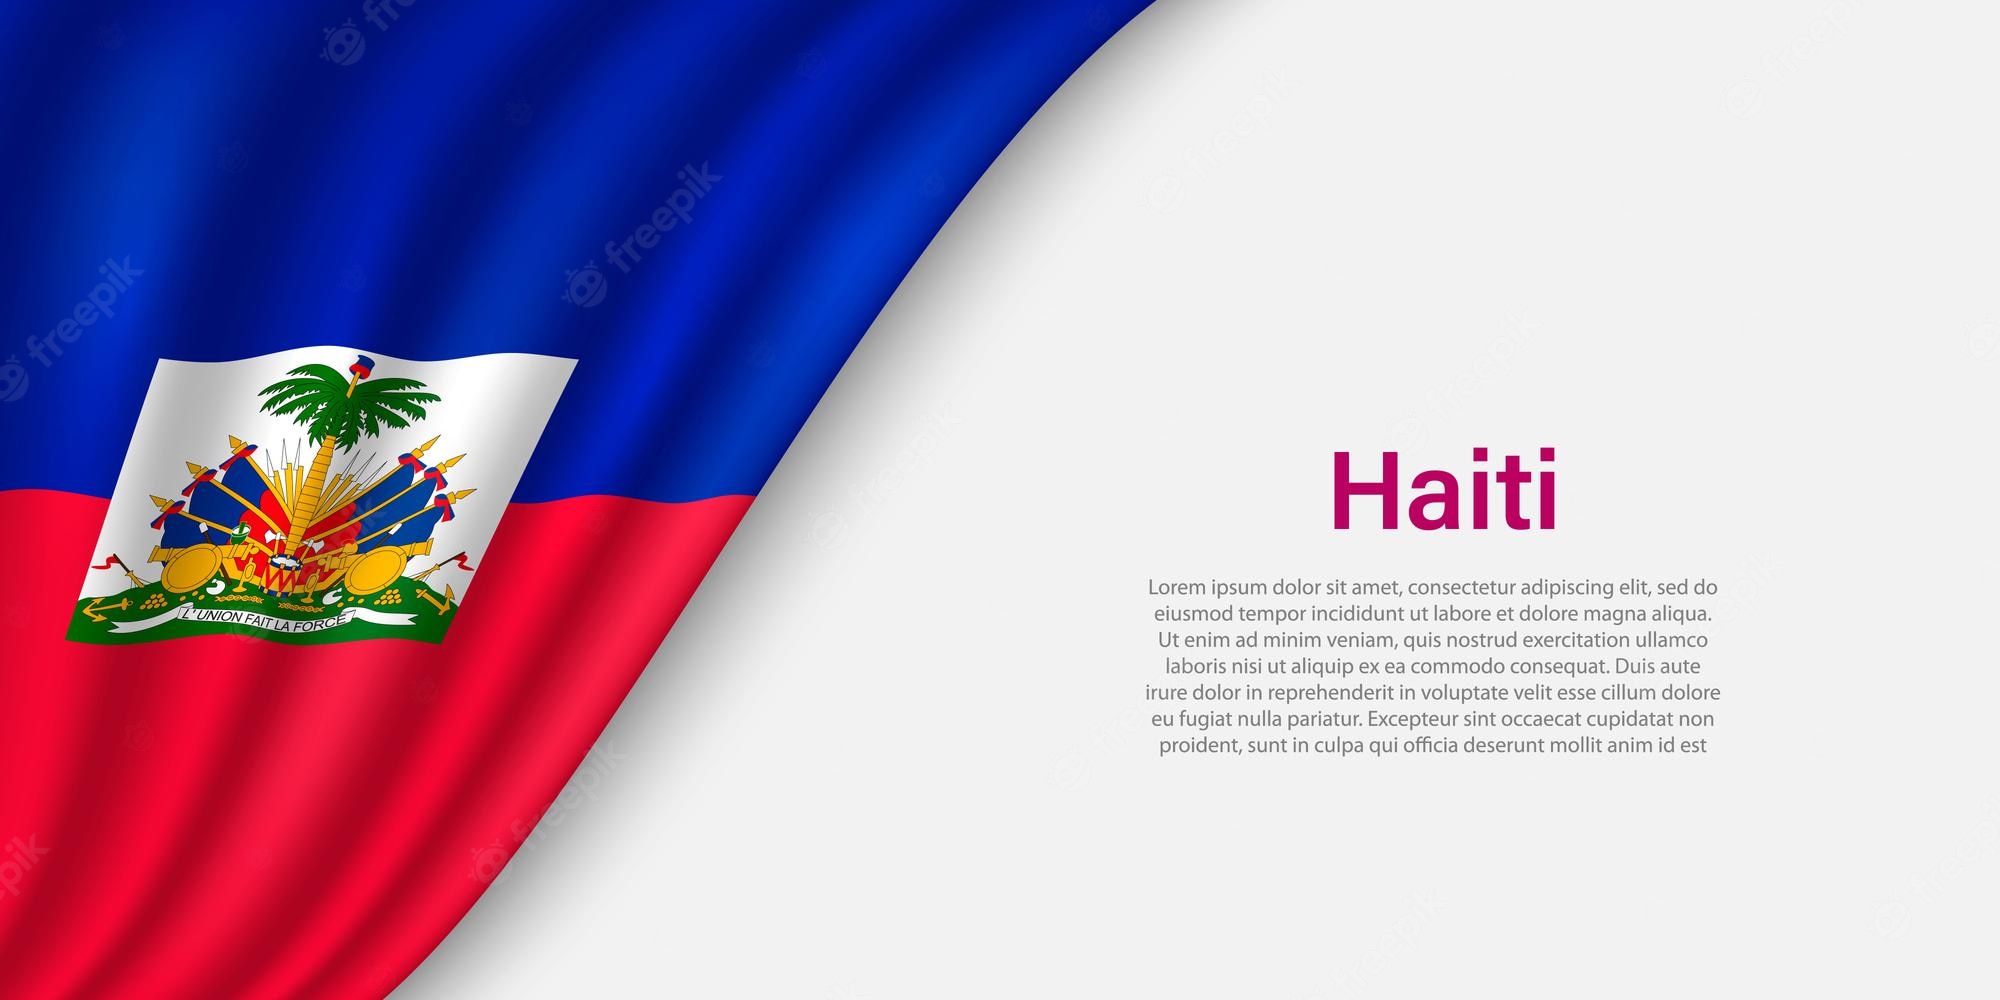 Haiti Backgrounds